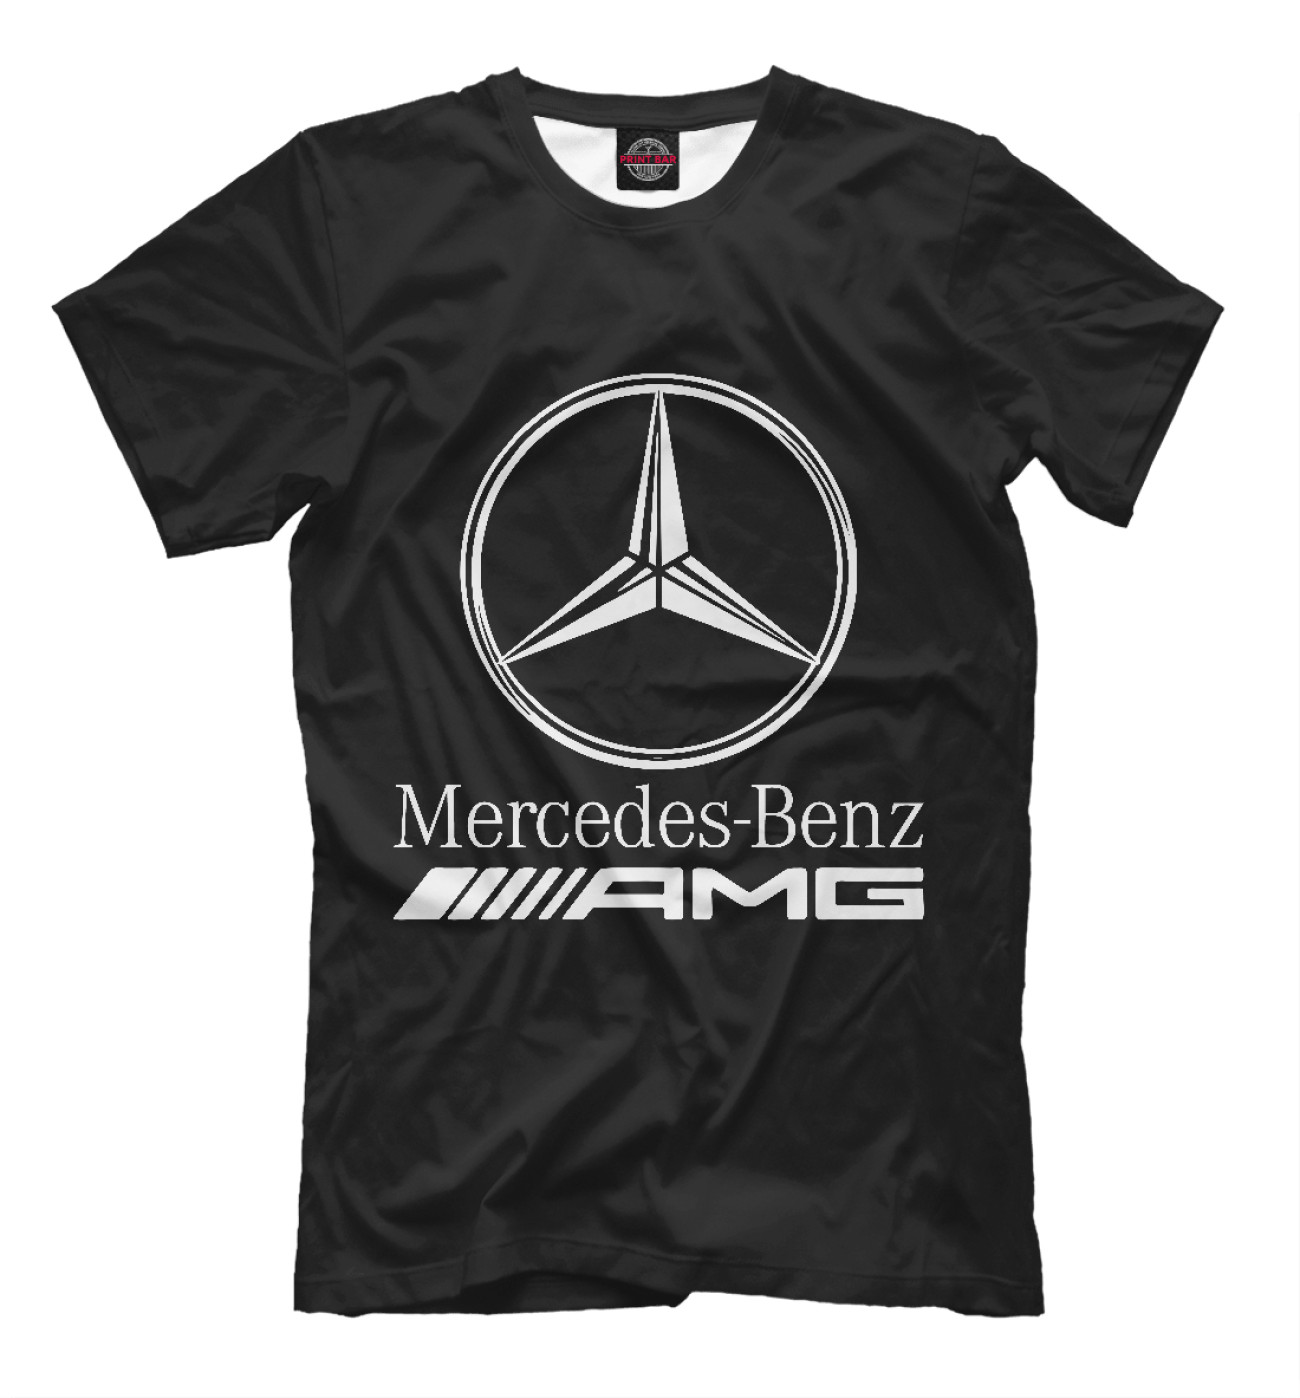 Мужская Футболка Mersedes-Benz AMG, артикул: MER-450821-fut-2